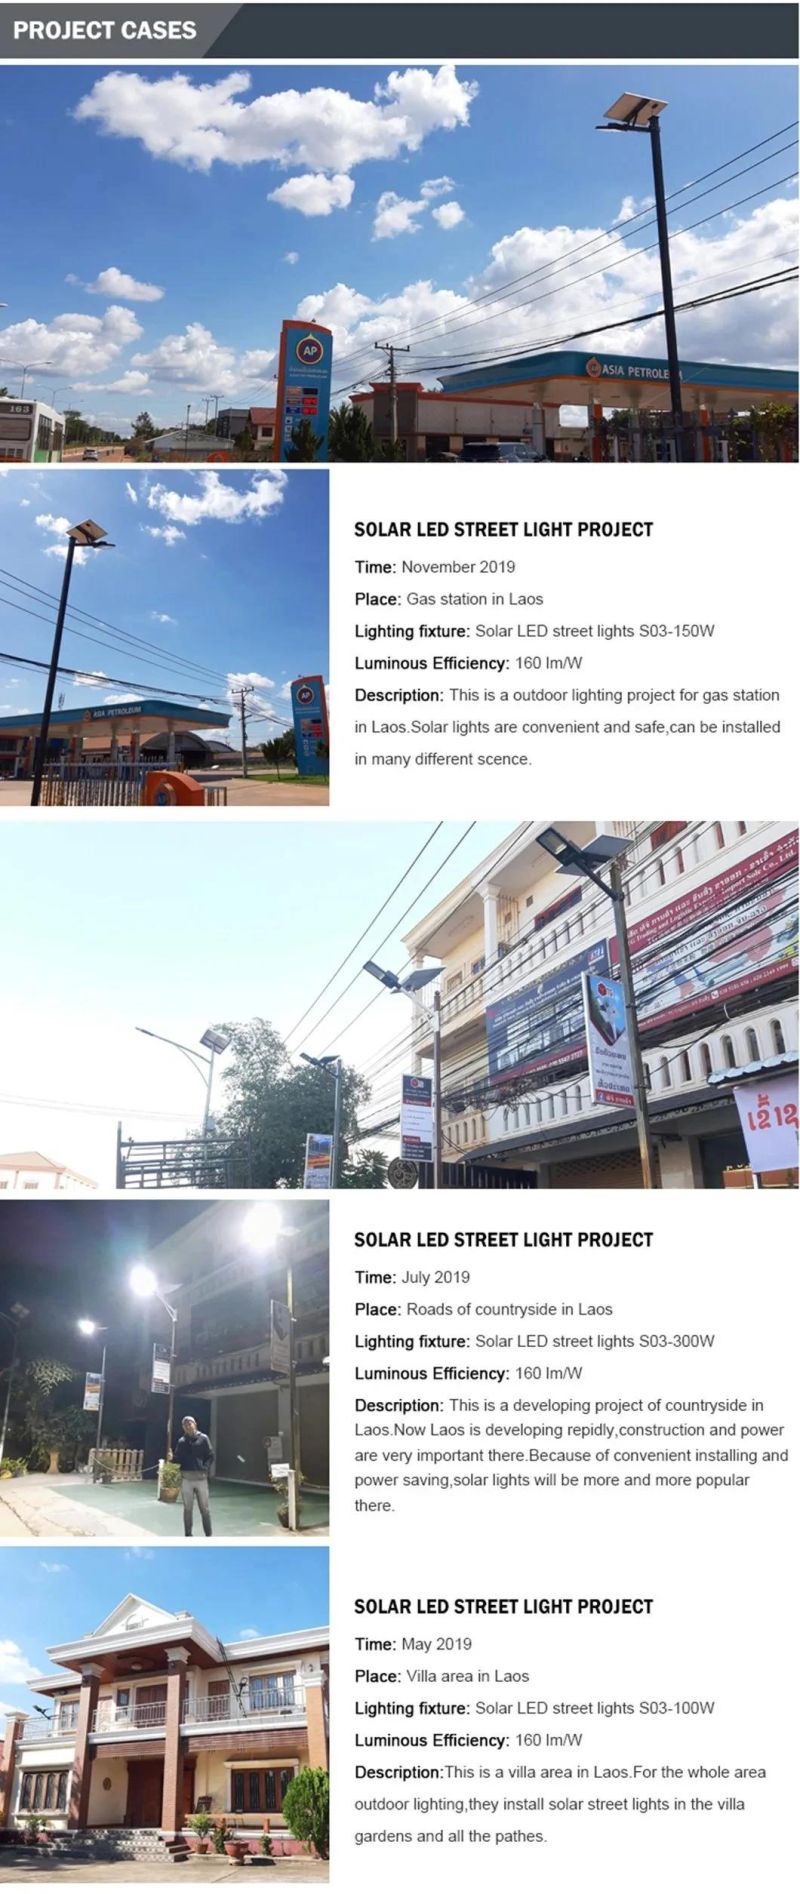 All in Two Split Type UL Vega Waterproof Solar Street Light Production Line Price List Project